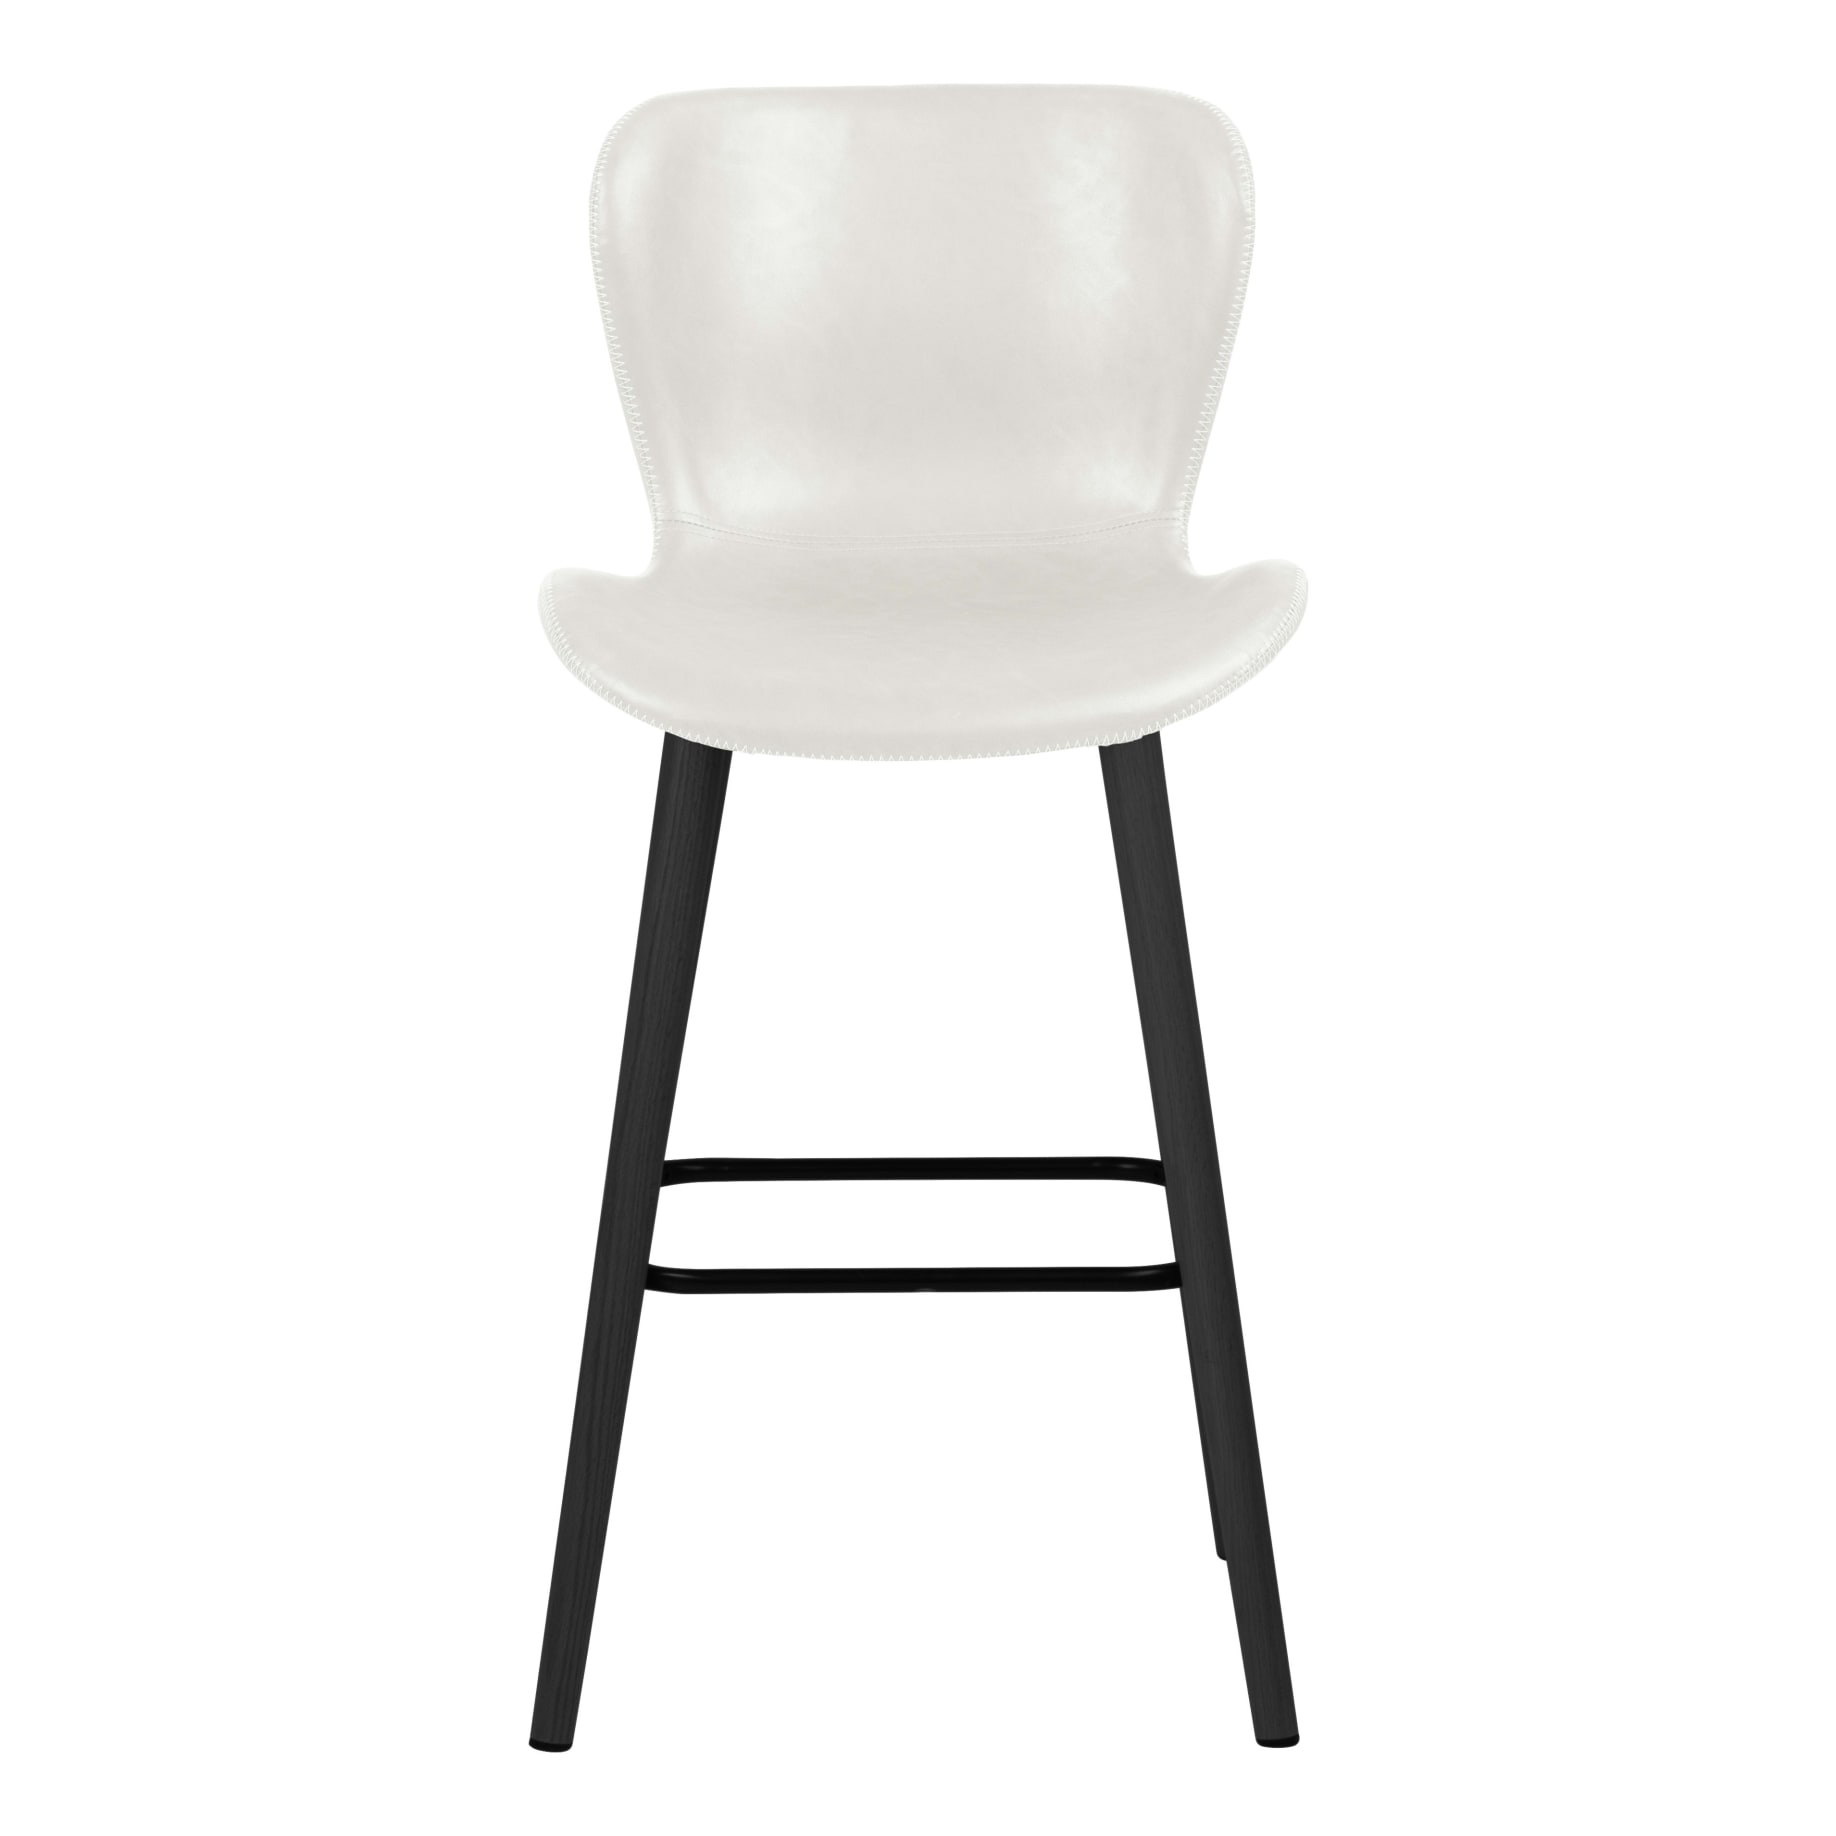 Batilda Bar Chair in White PU / Black leg